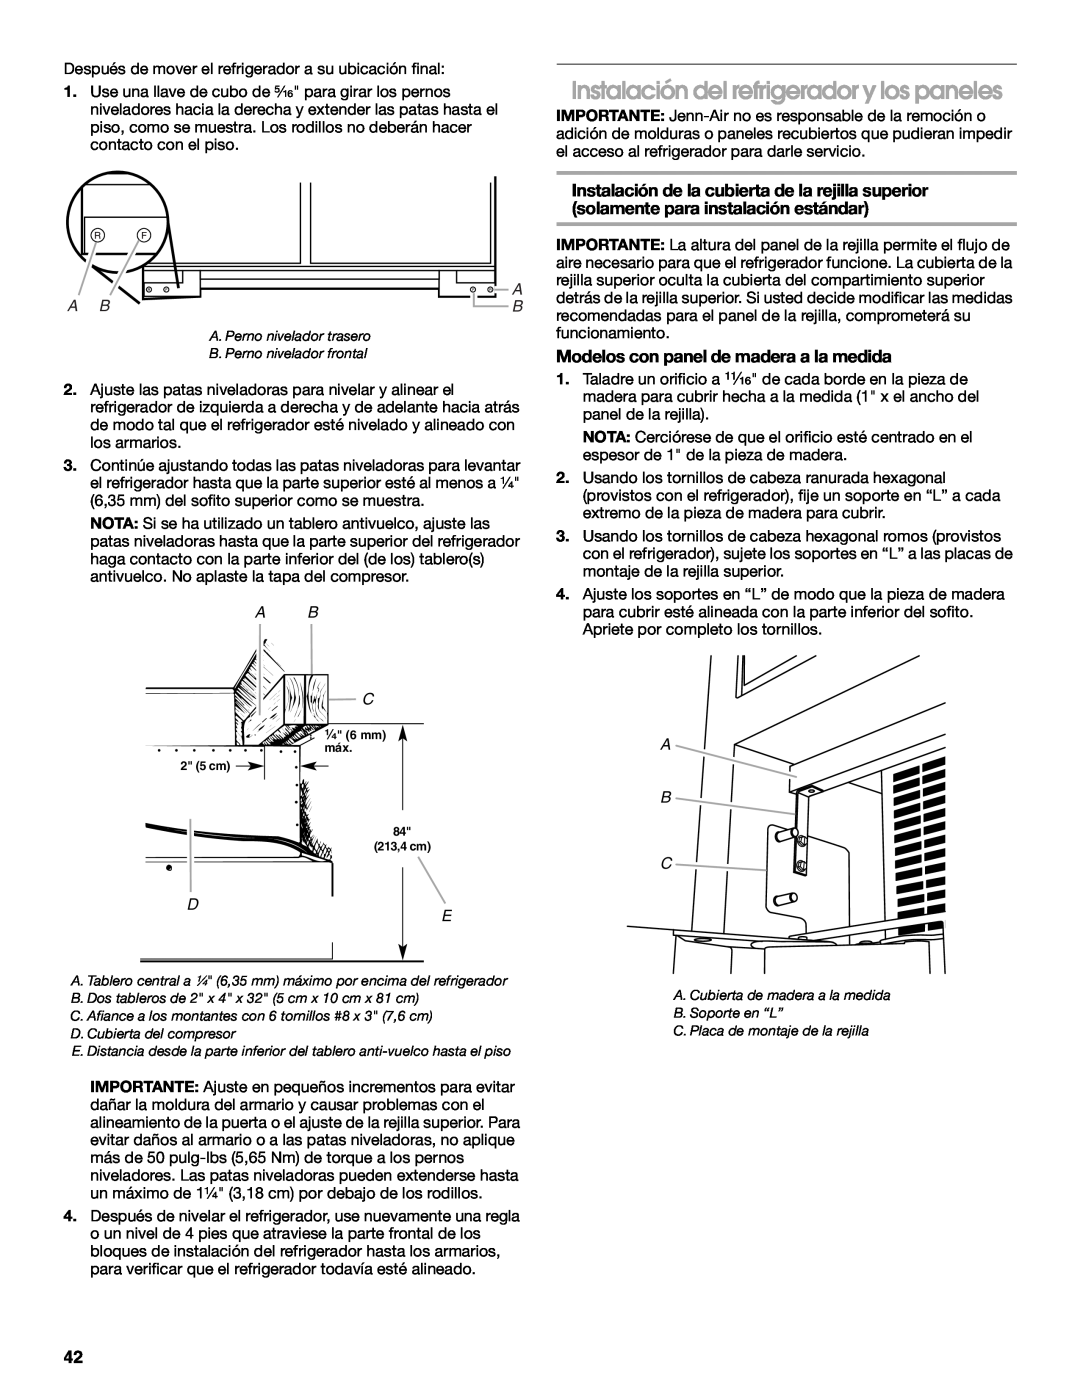 Jenn-Air W10379136B manual Instalación del refrigerador y los paneles, Modelos con panel de madera a la medida, A B C 